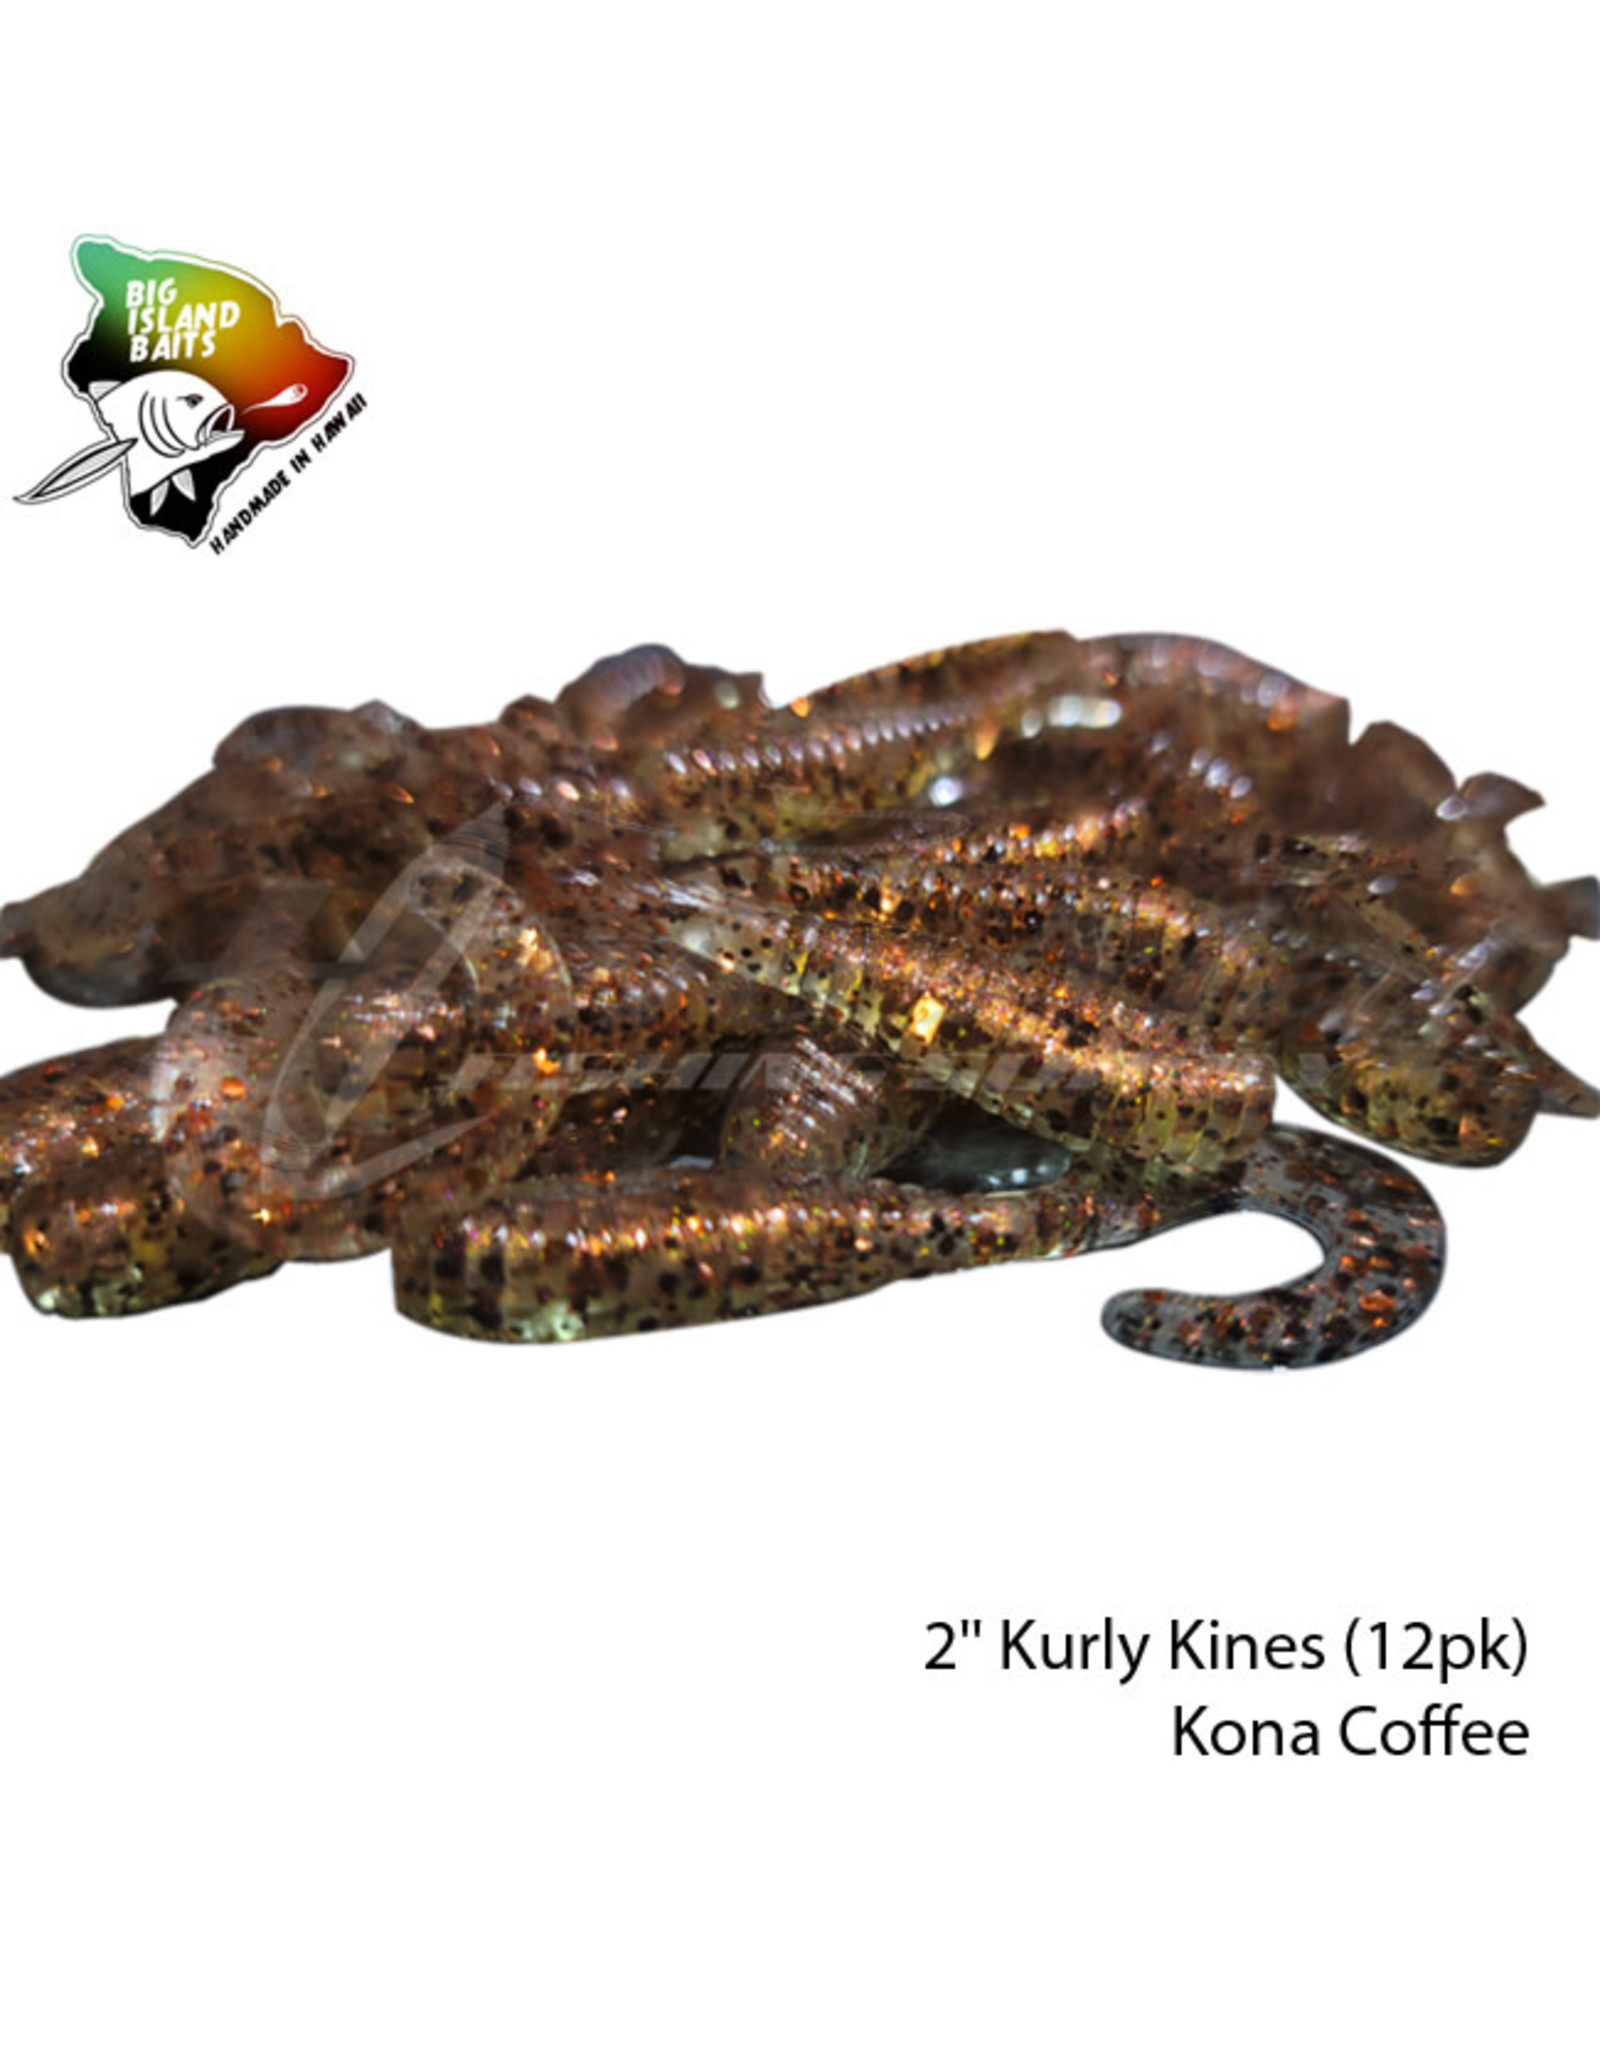 BIG ISLAND BAITS 2" Kurly Kines Kona Coffee (12pk)